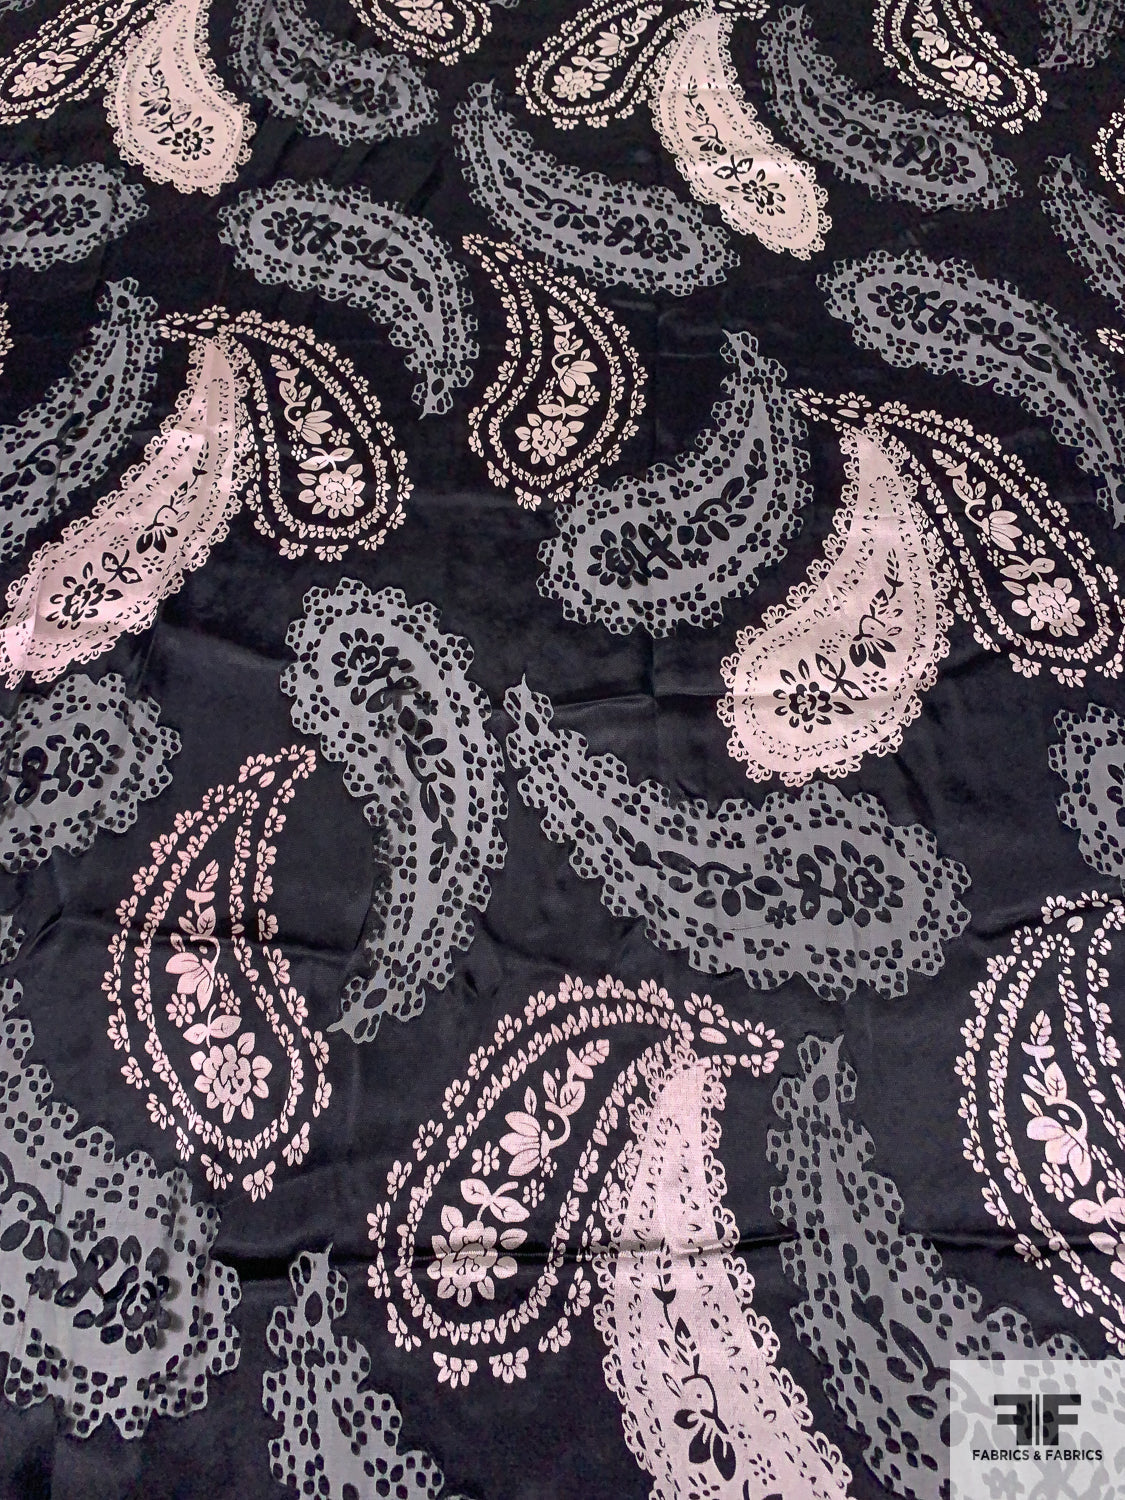 Paisley Printed and Burnout Silk-Rayon Chiffon - Black / Dusty Ice Pink